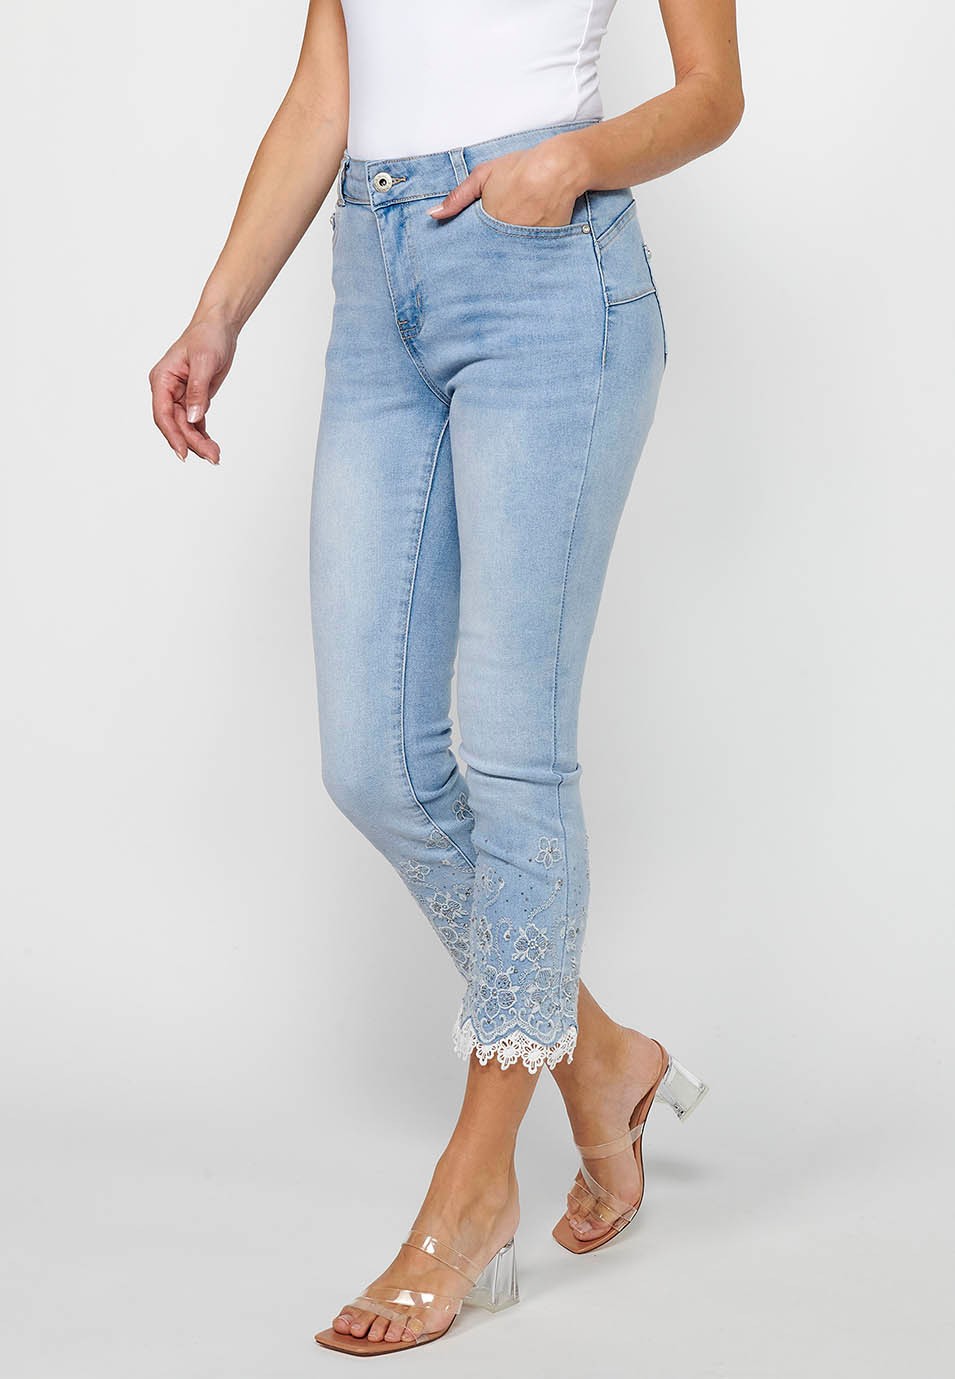 Pantalón largo jeans slim con Cierre delantero con cremallera y Detalles bordados florales de Color Azul claro para Mujer 4